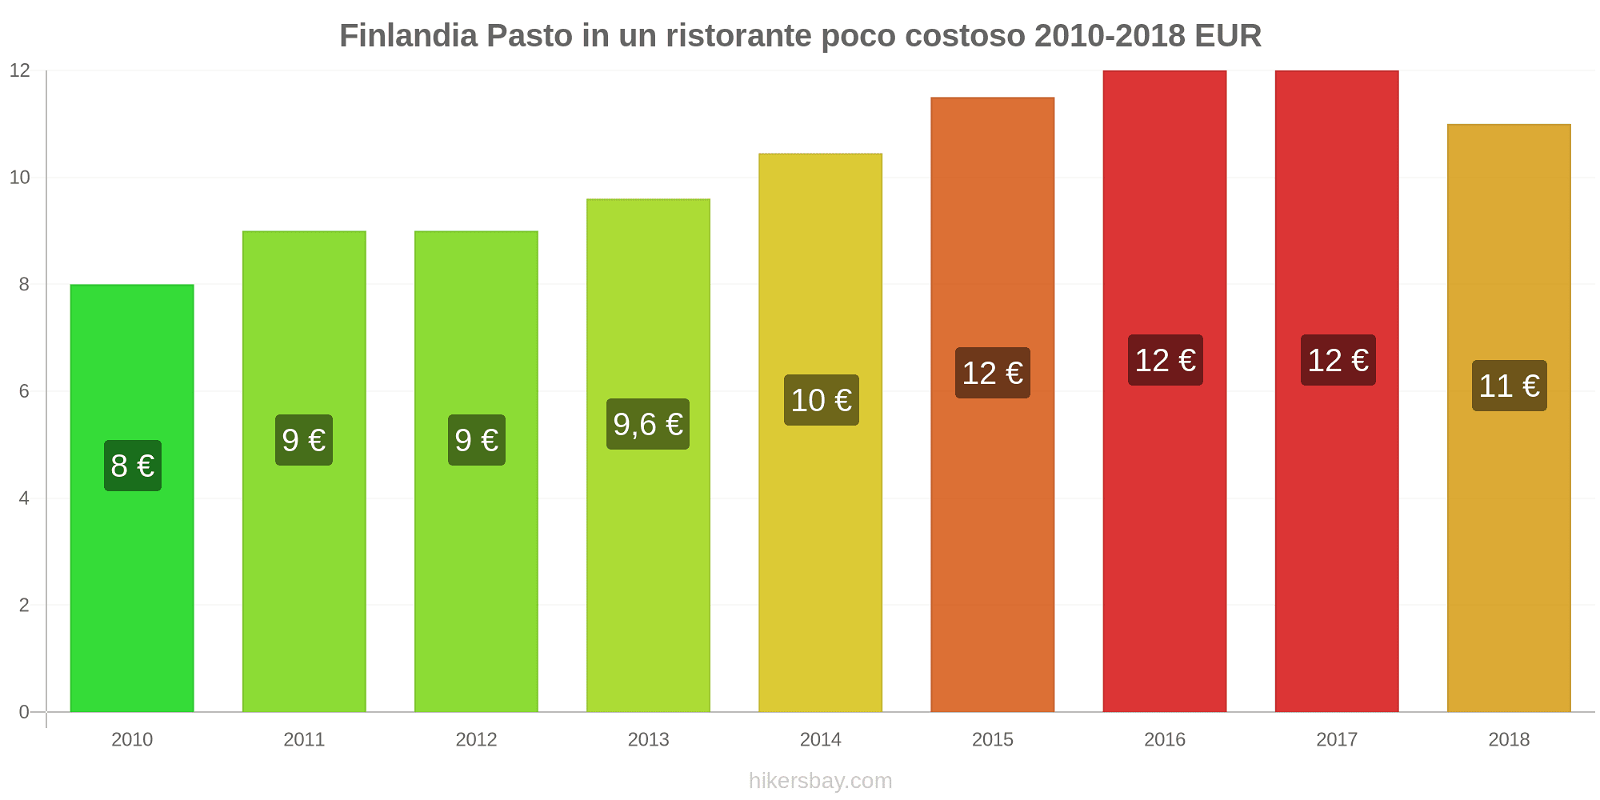 Finlandia cambi di prezzo Pasto in un ristorante economico hikersbay.com